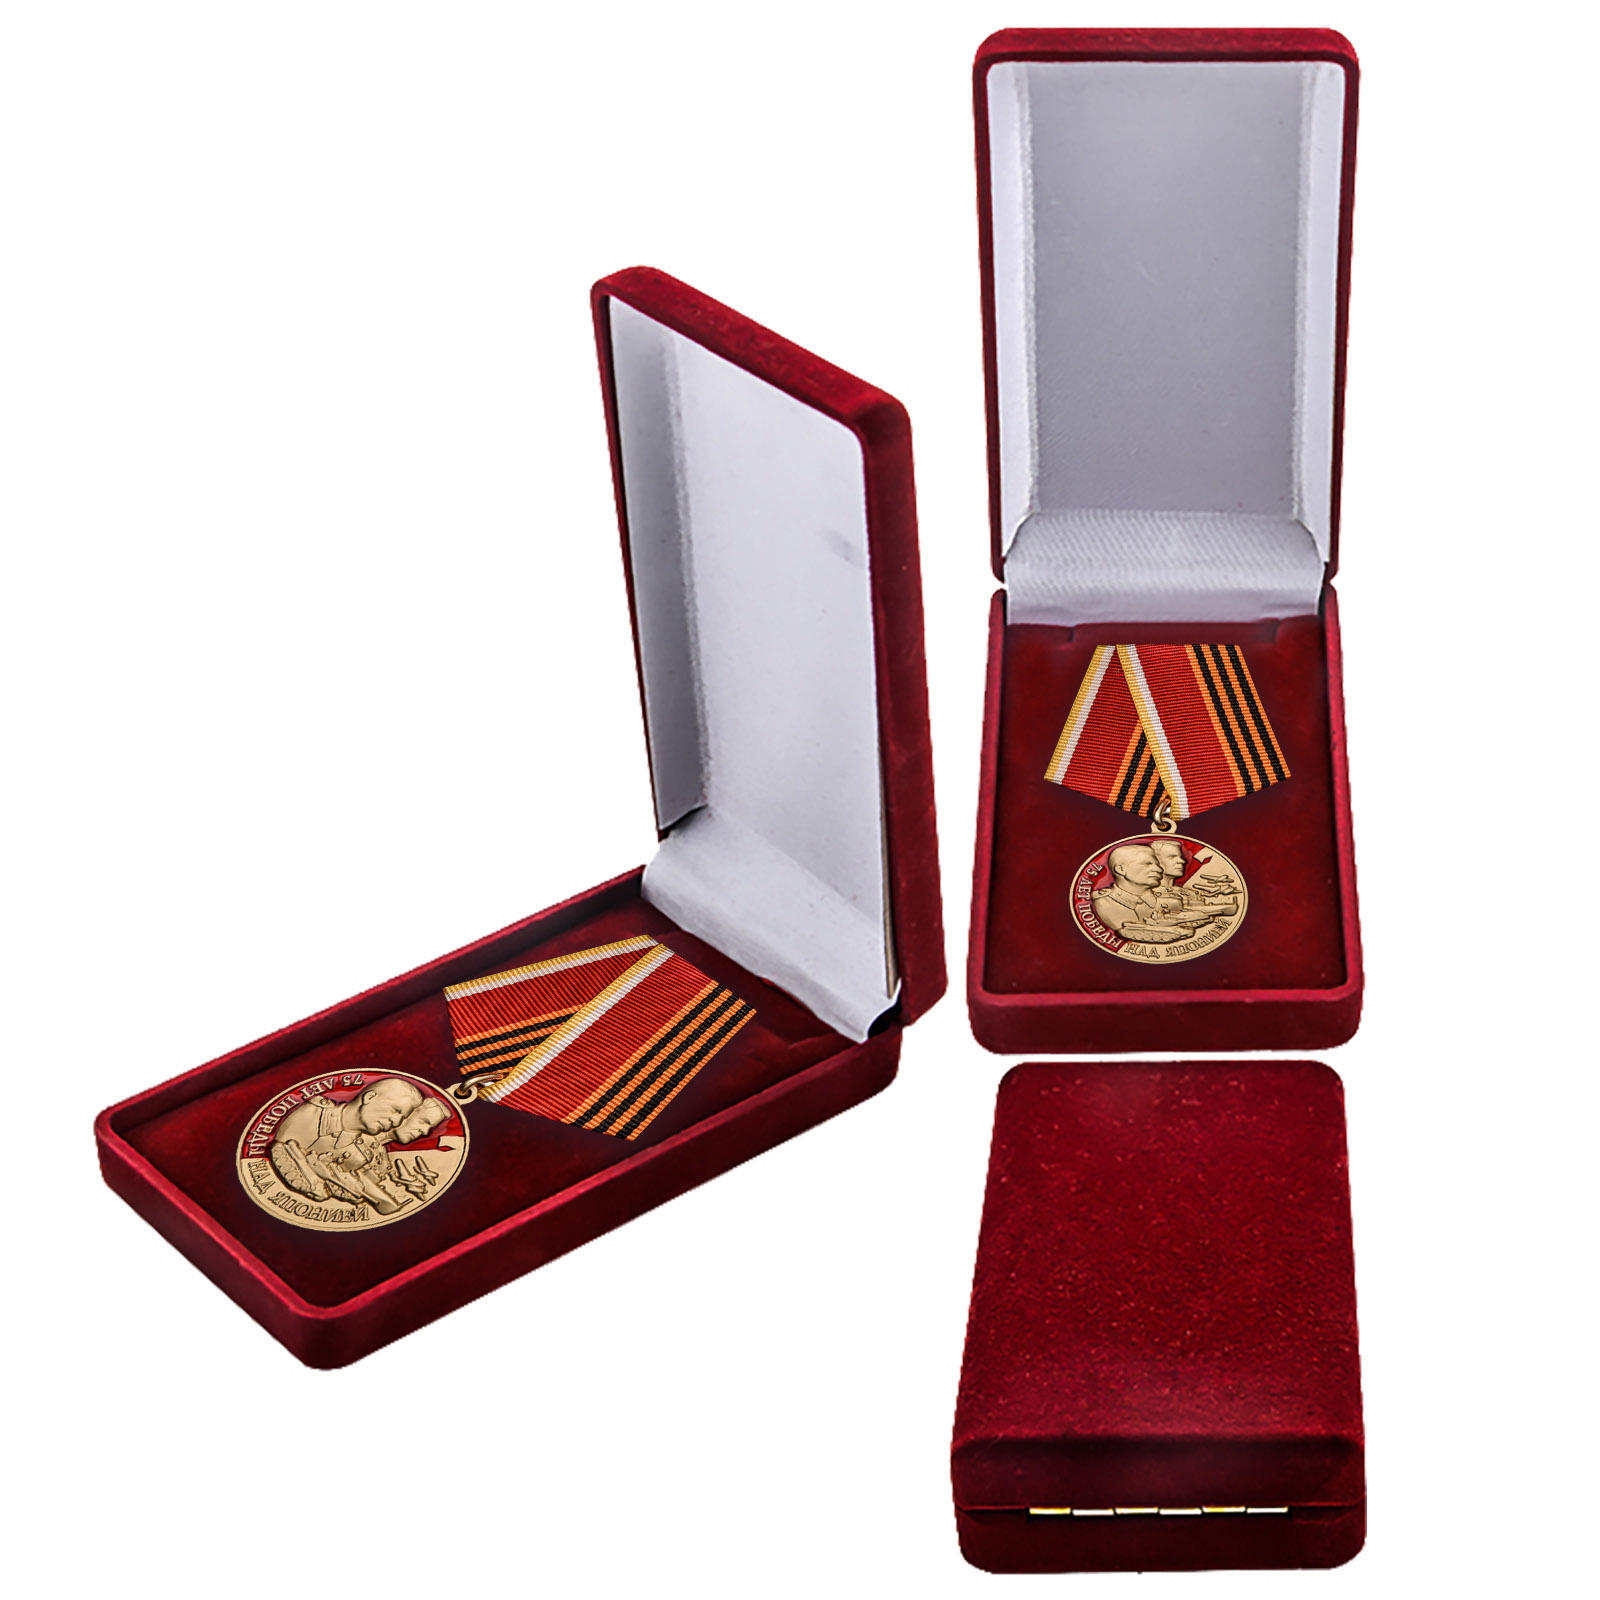 Купить медаль 75 лет Победы над Японией онлайн в подарок